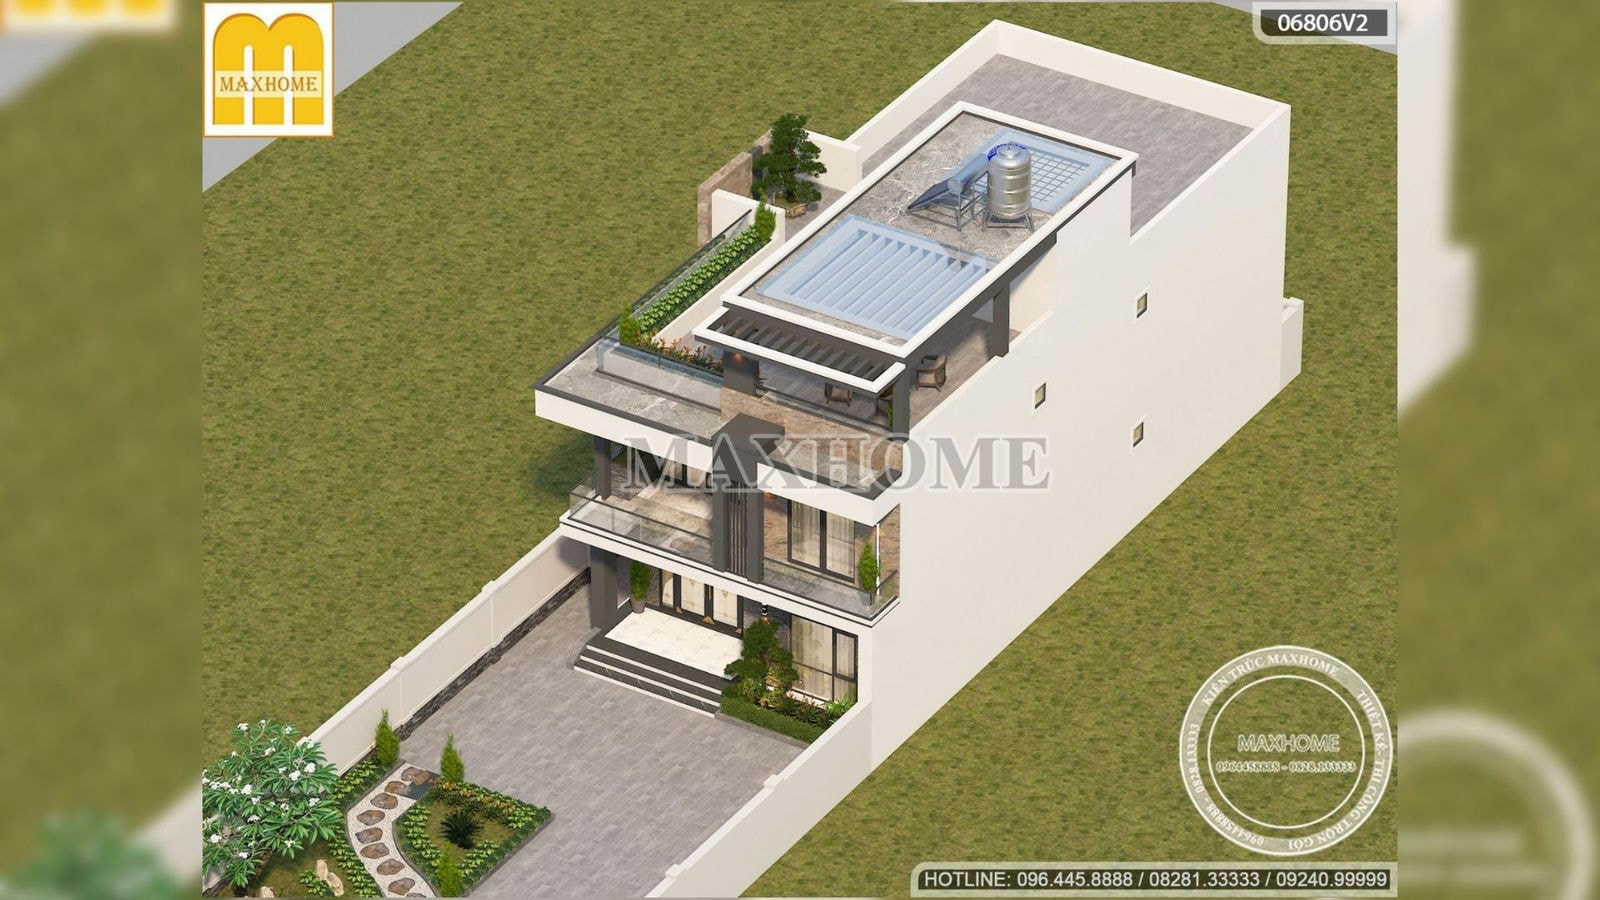 Thiết kế nhà hiện đại 2 tầng 1 tum siêu đẹp với chi phí hợp lý | MH02069